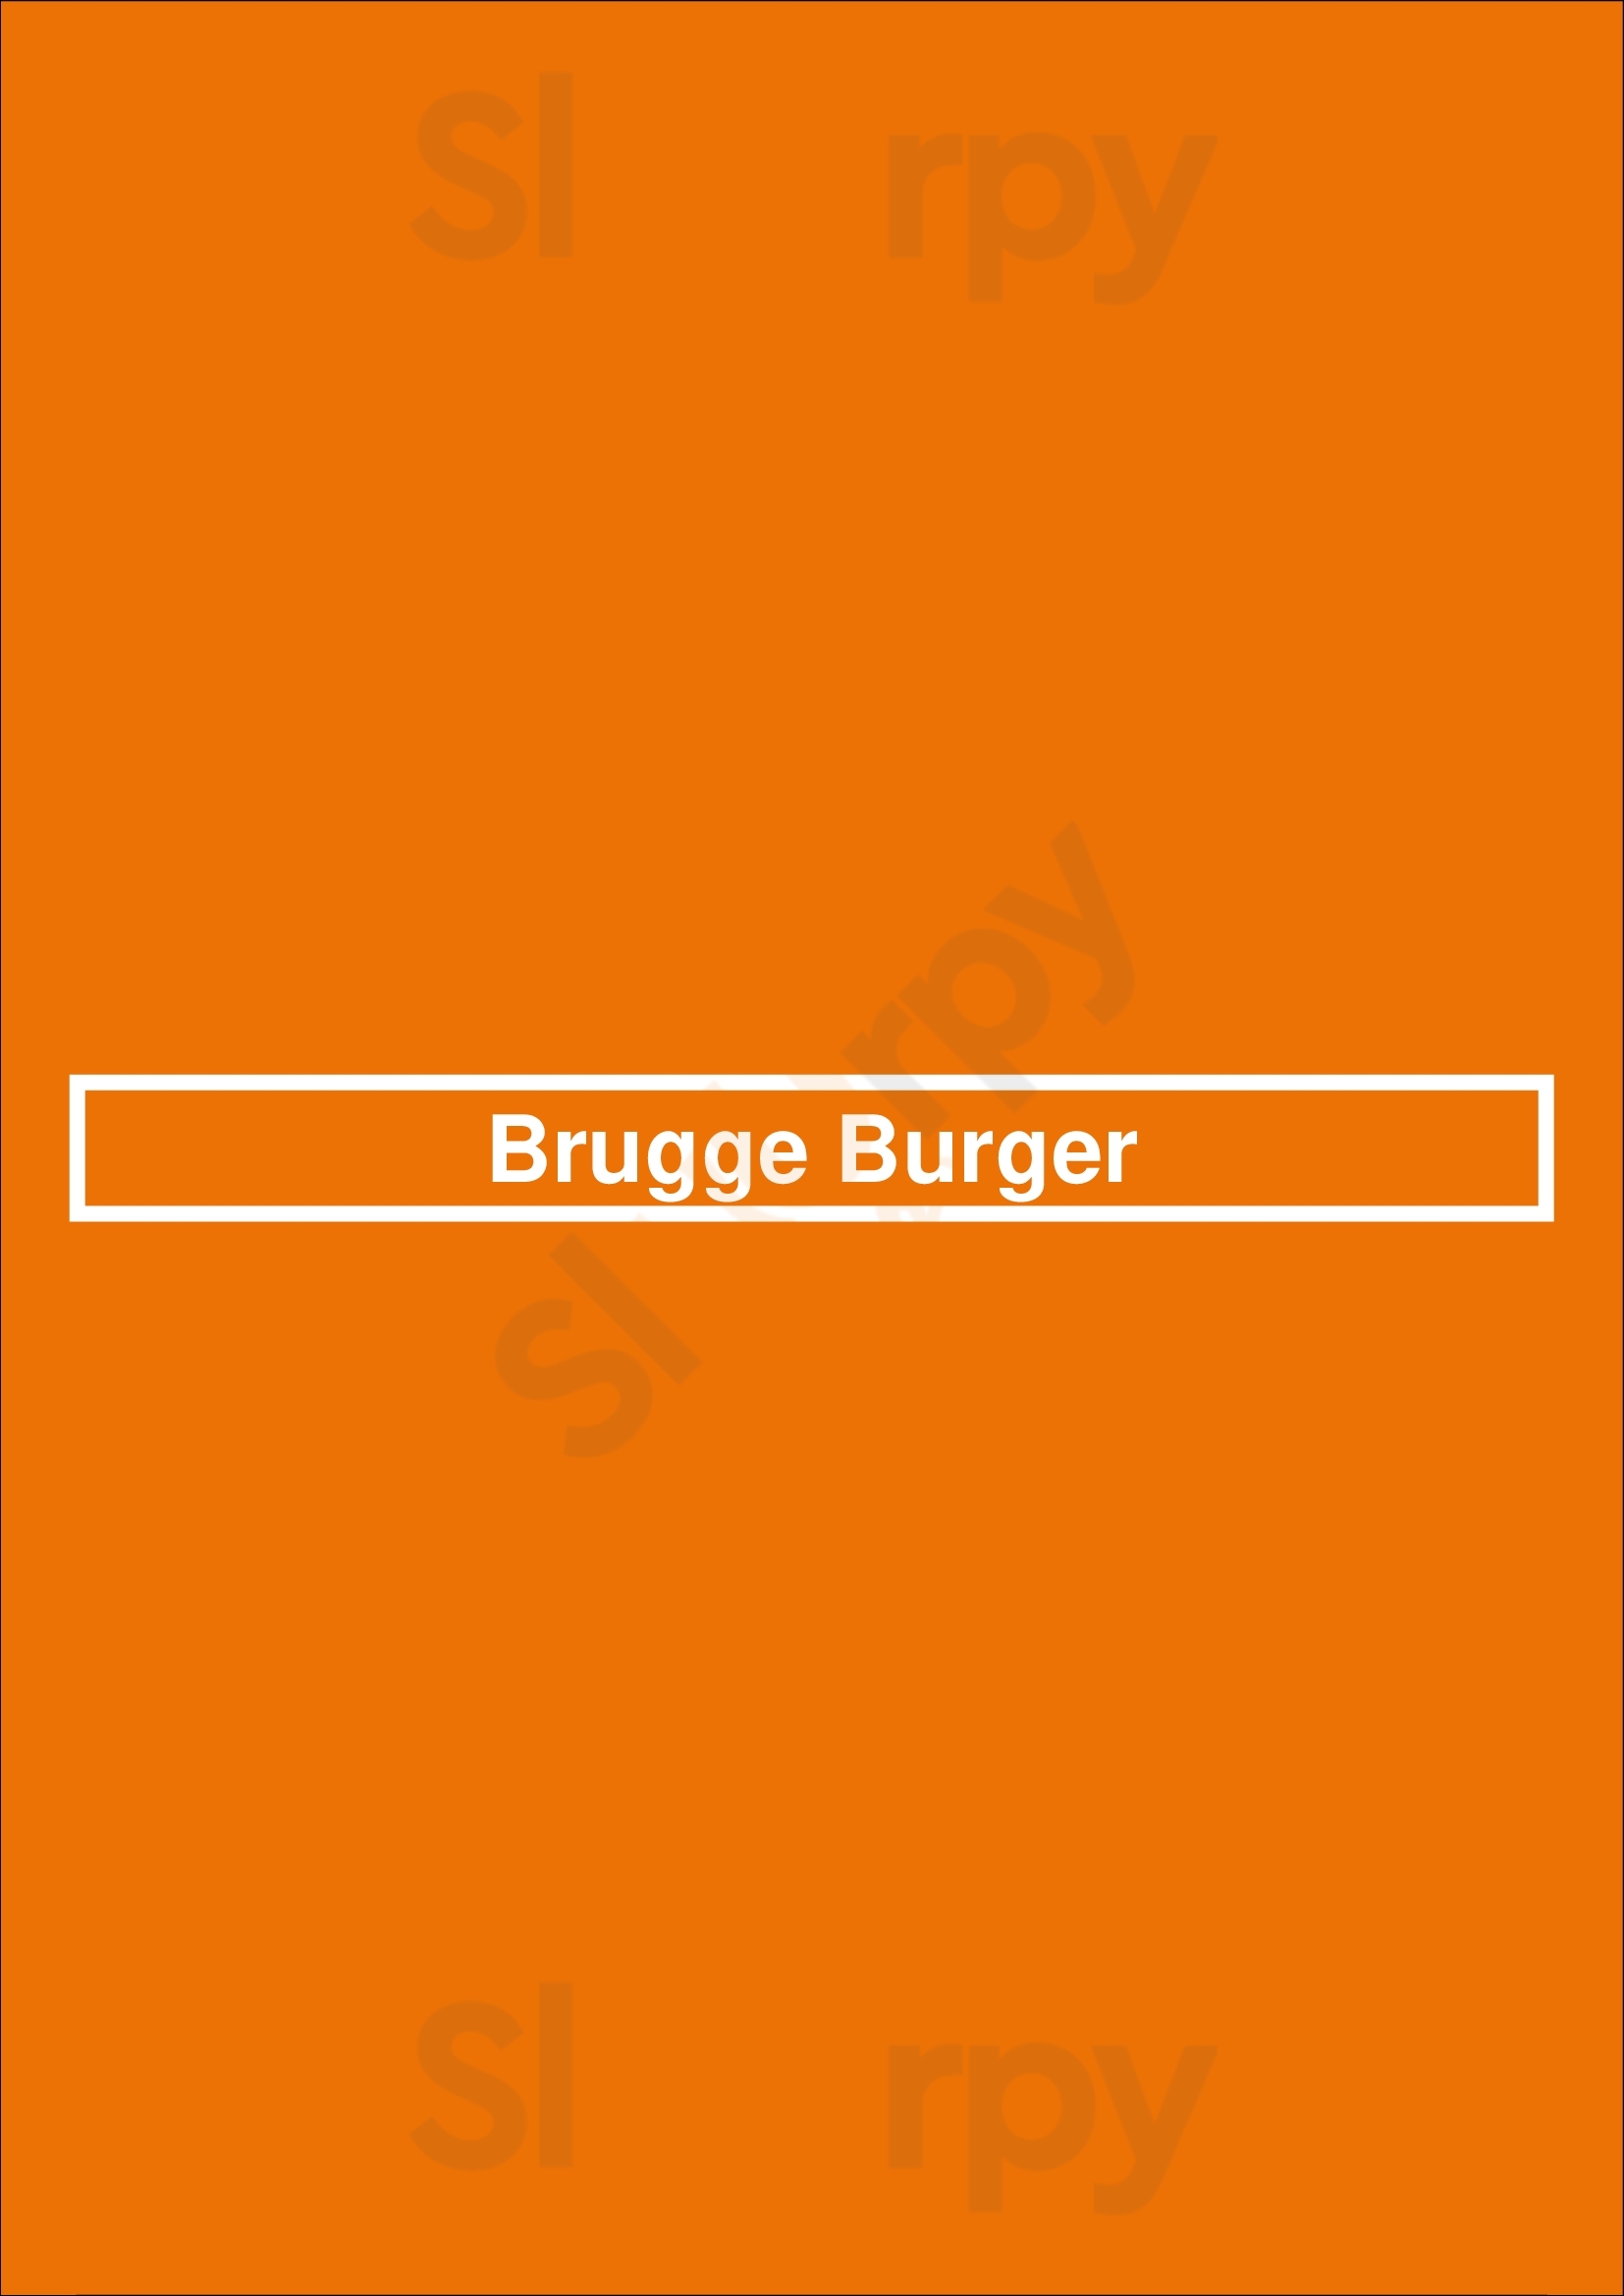 Brugge Burger Bruges Menu - 1